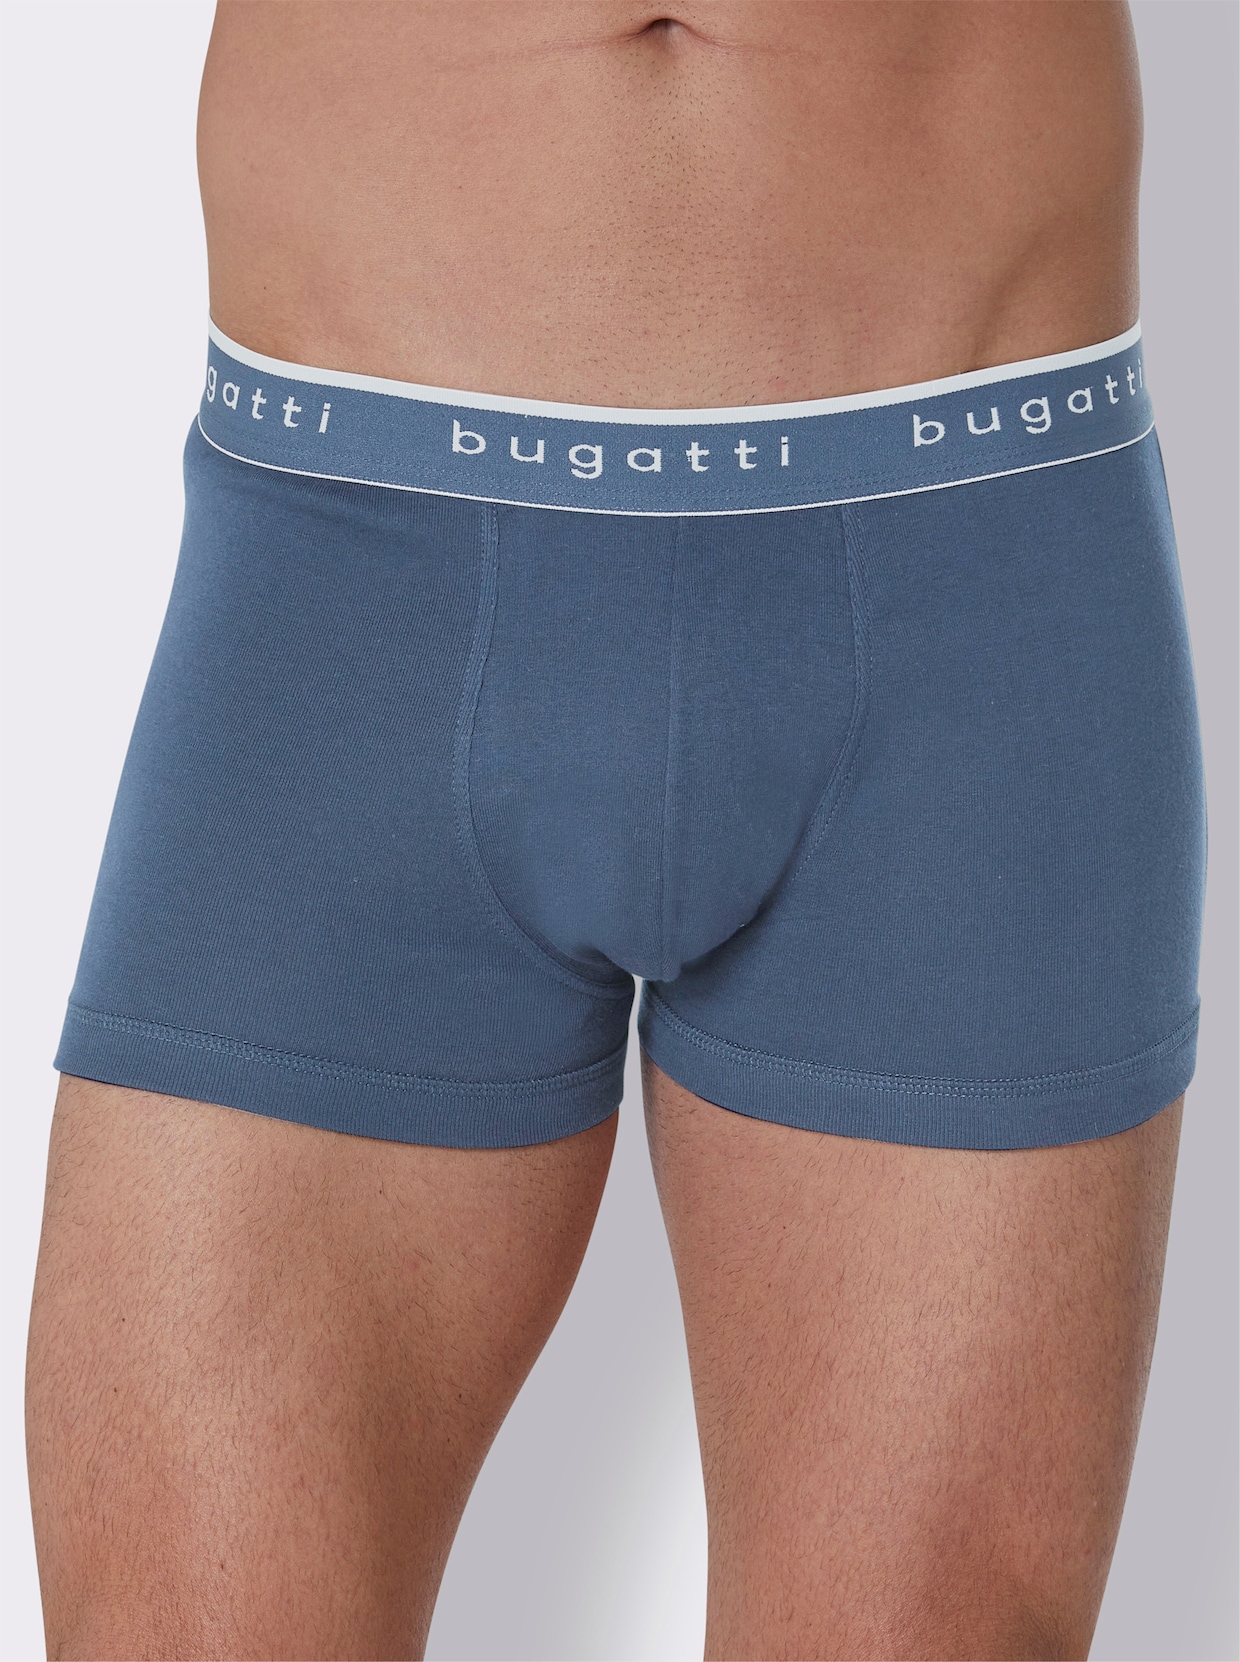 bugatti Pants - blau